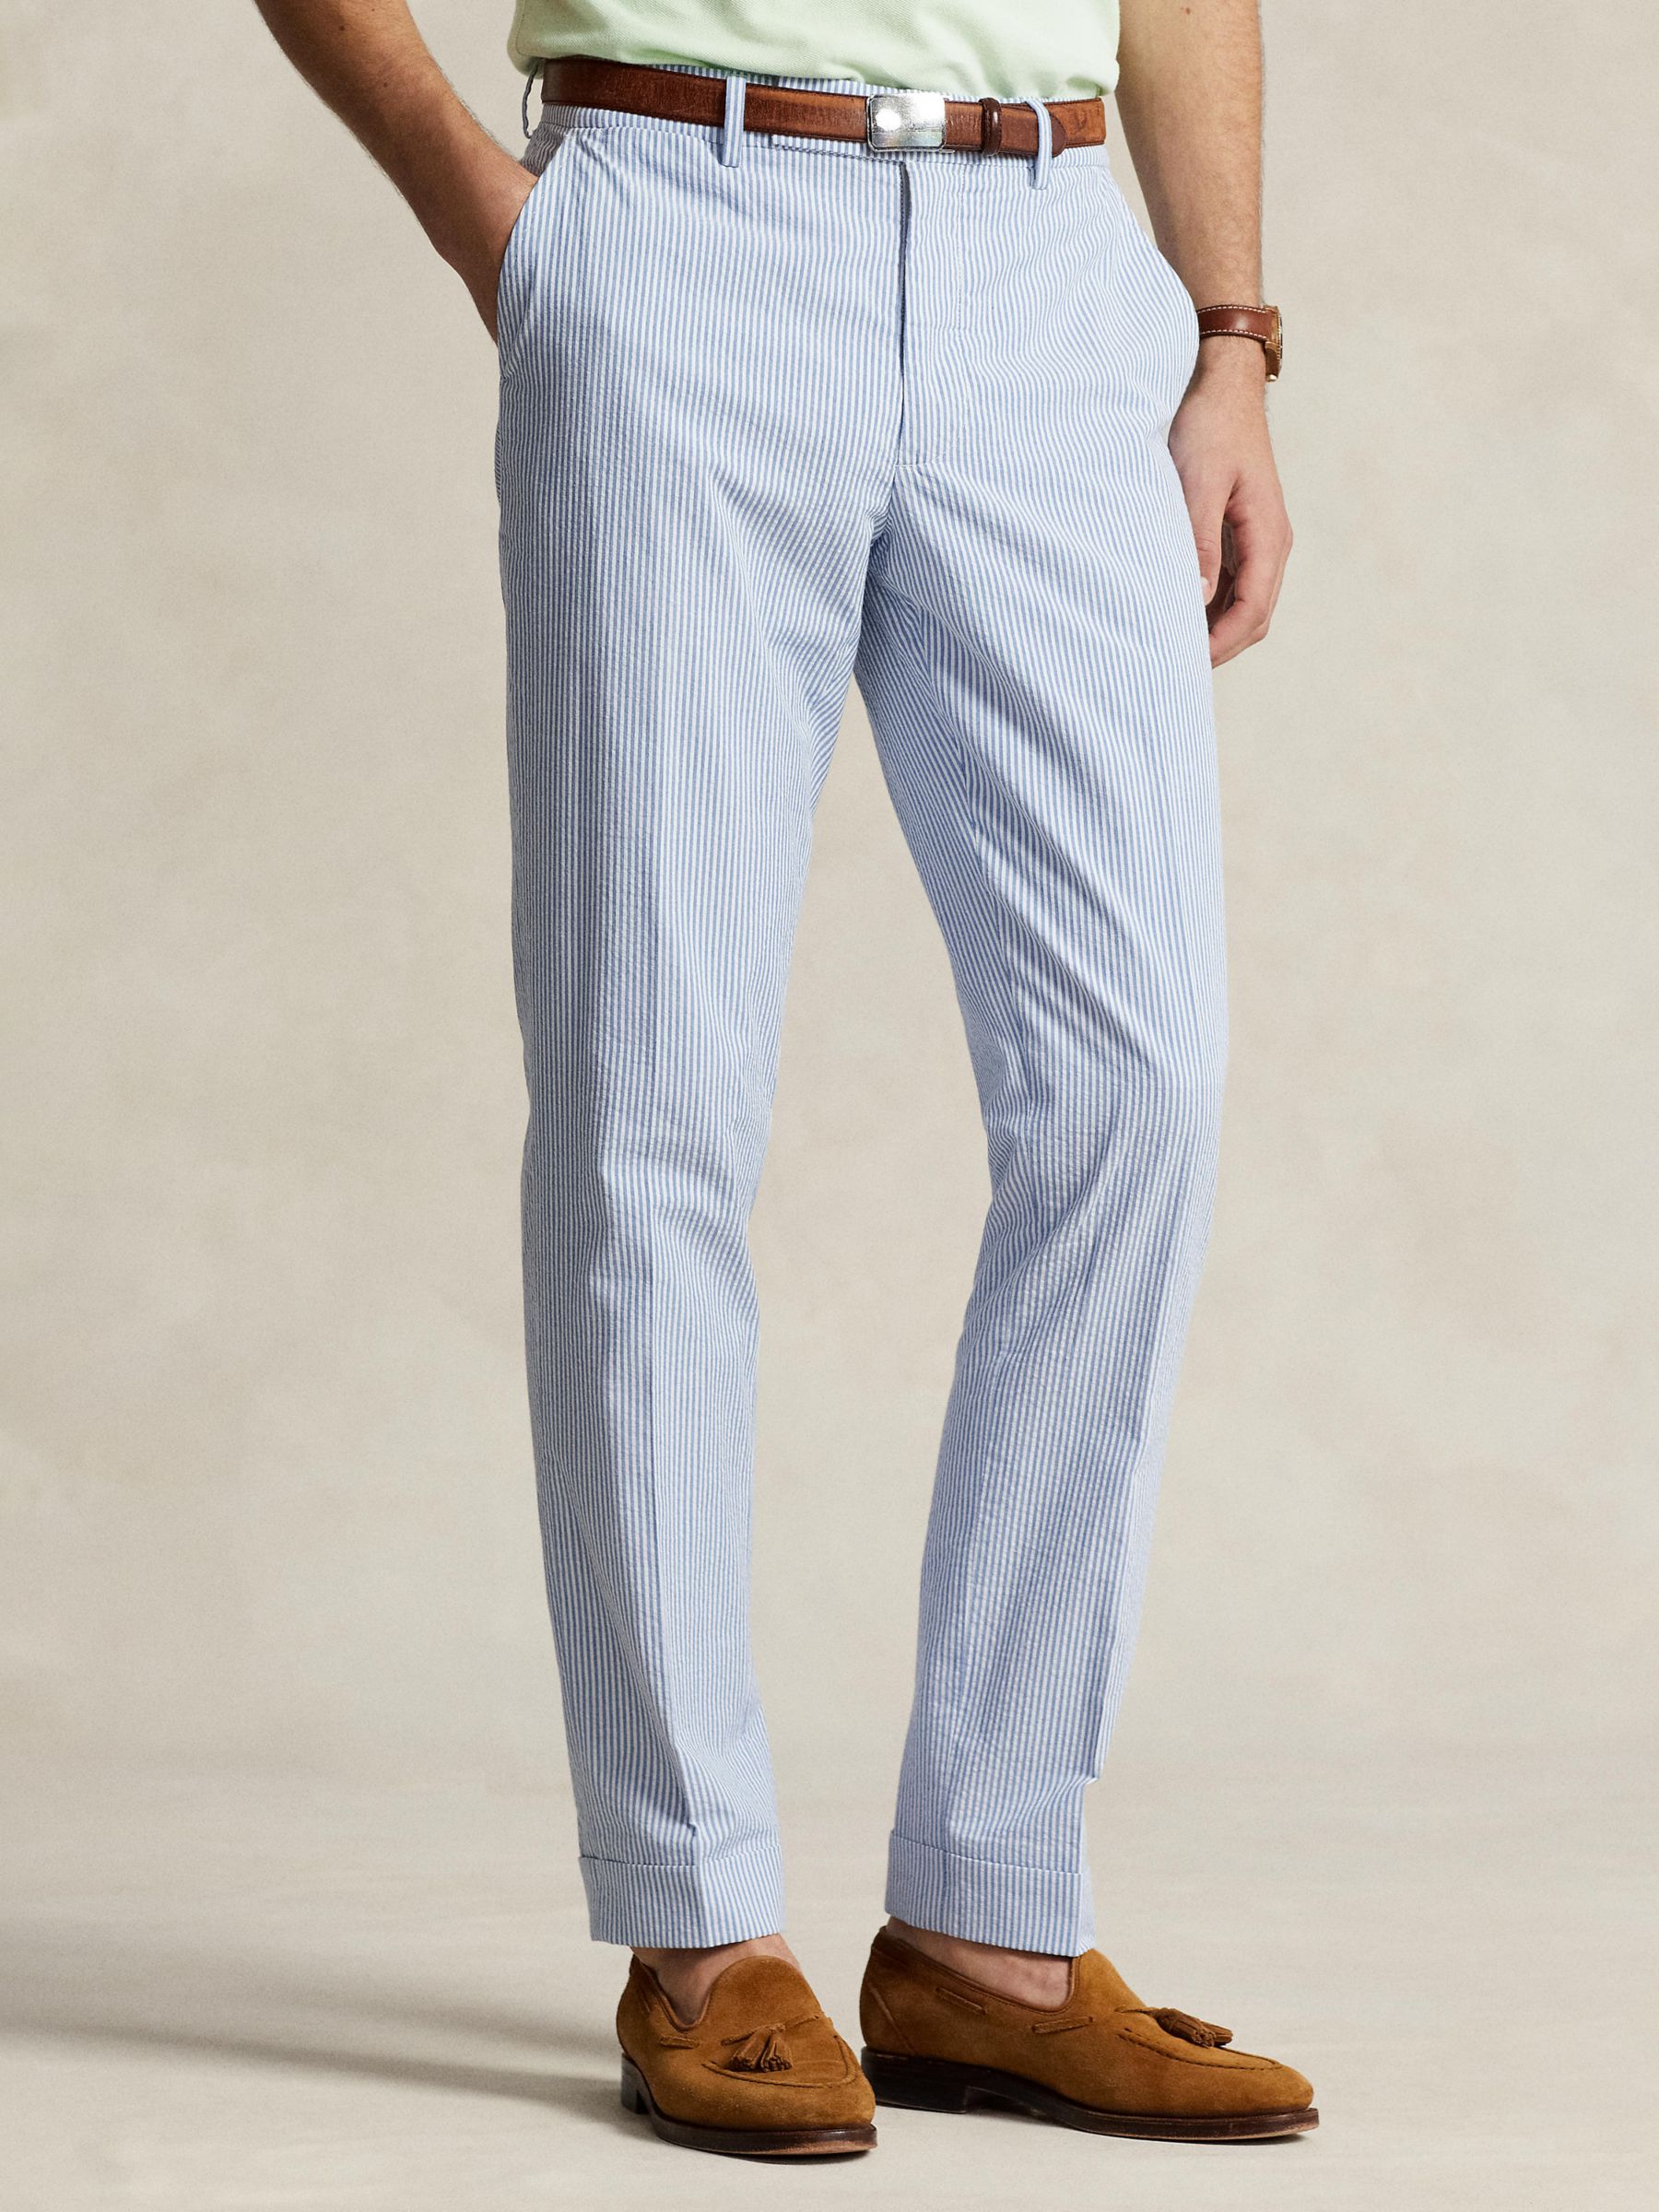 Ralph Lauren Seersucker Suit Trousers, Blue/White, 32R